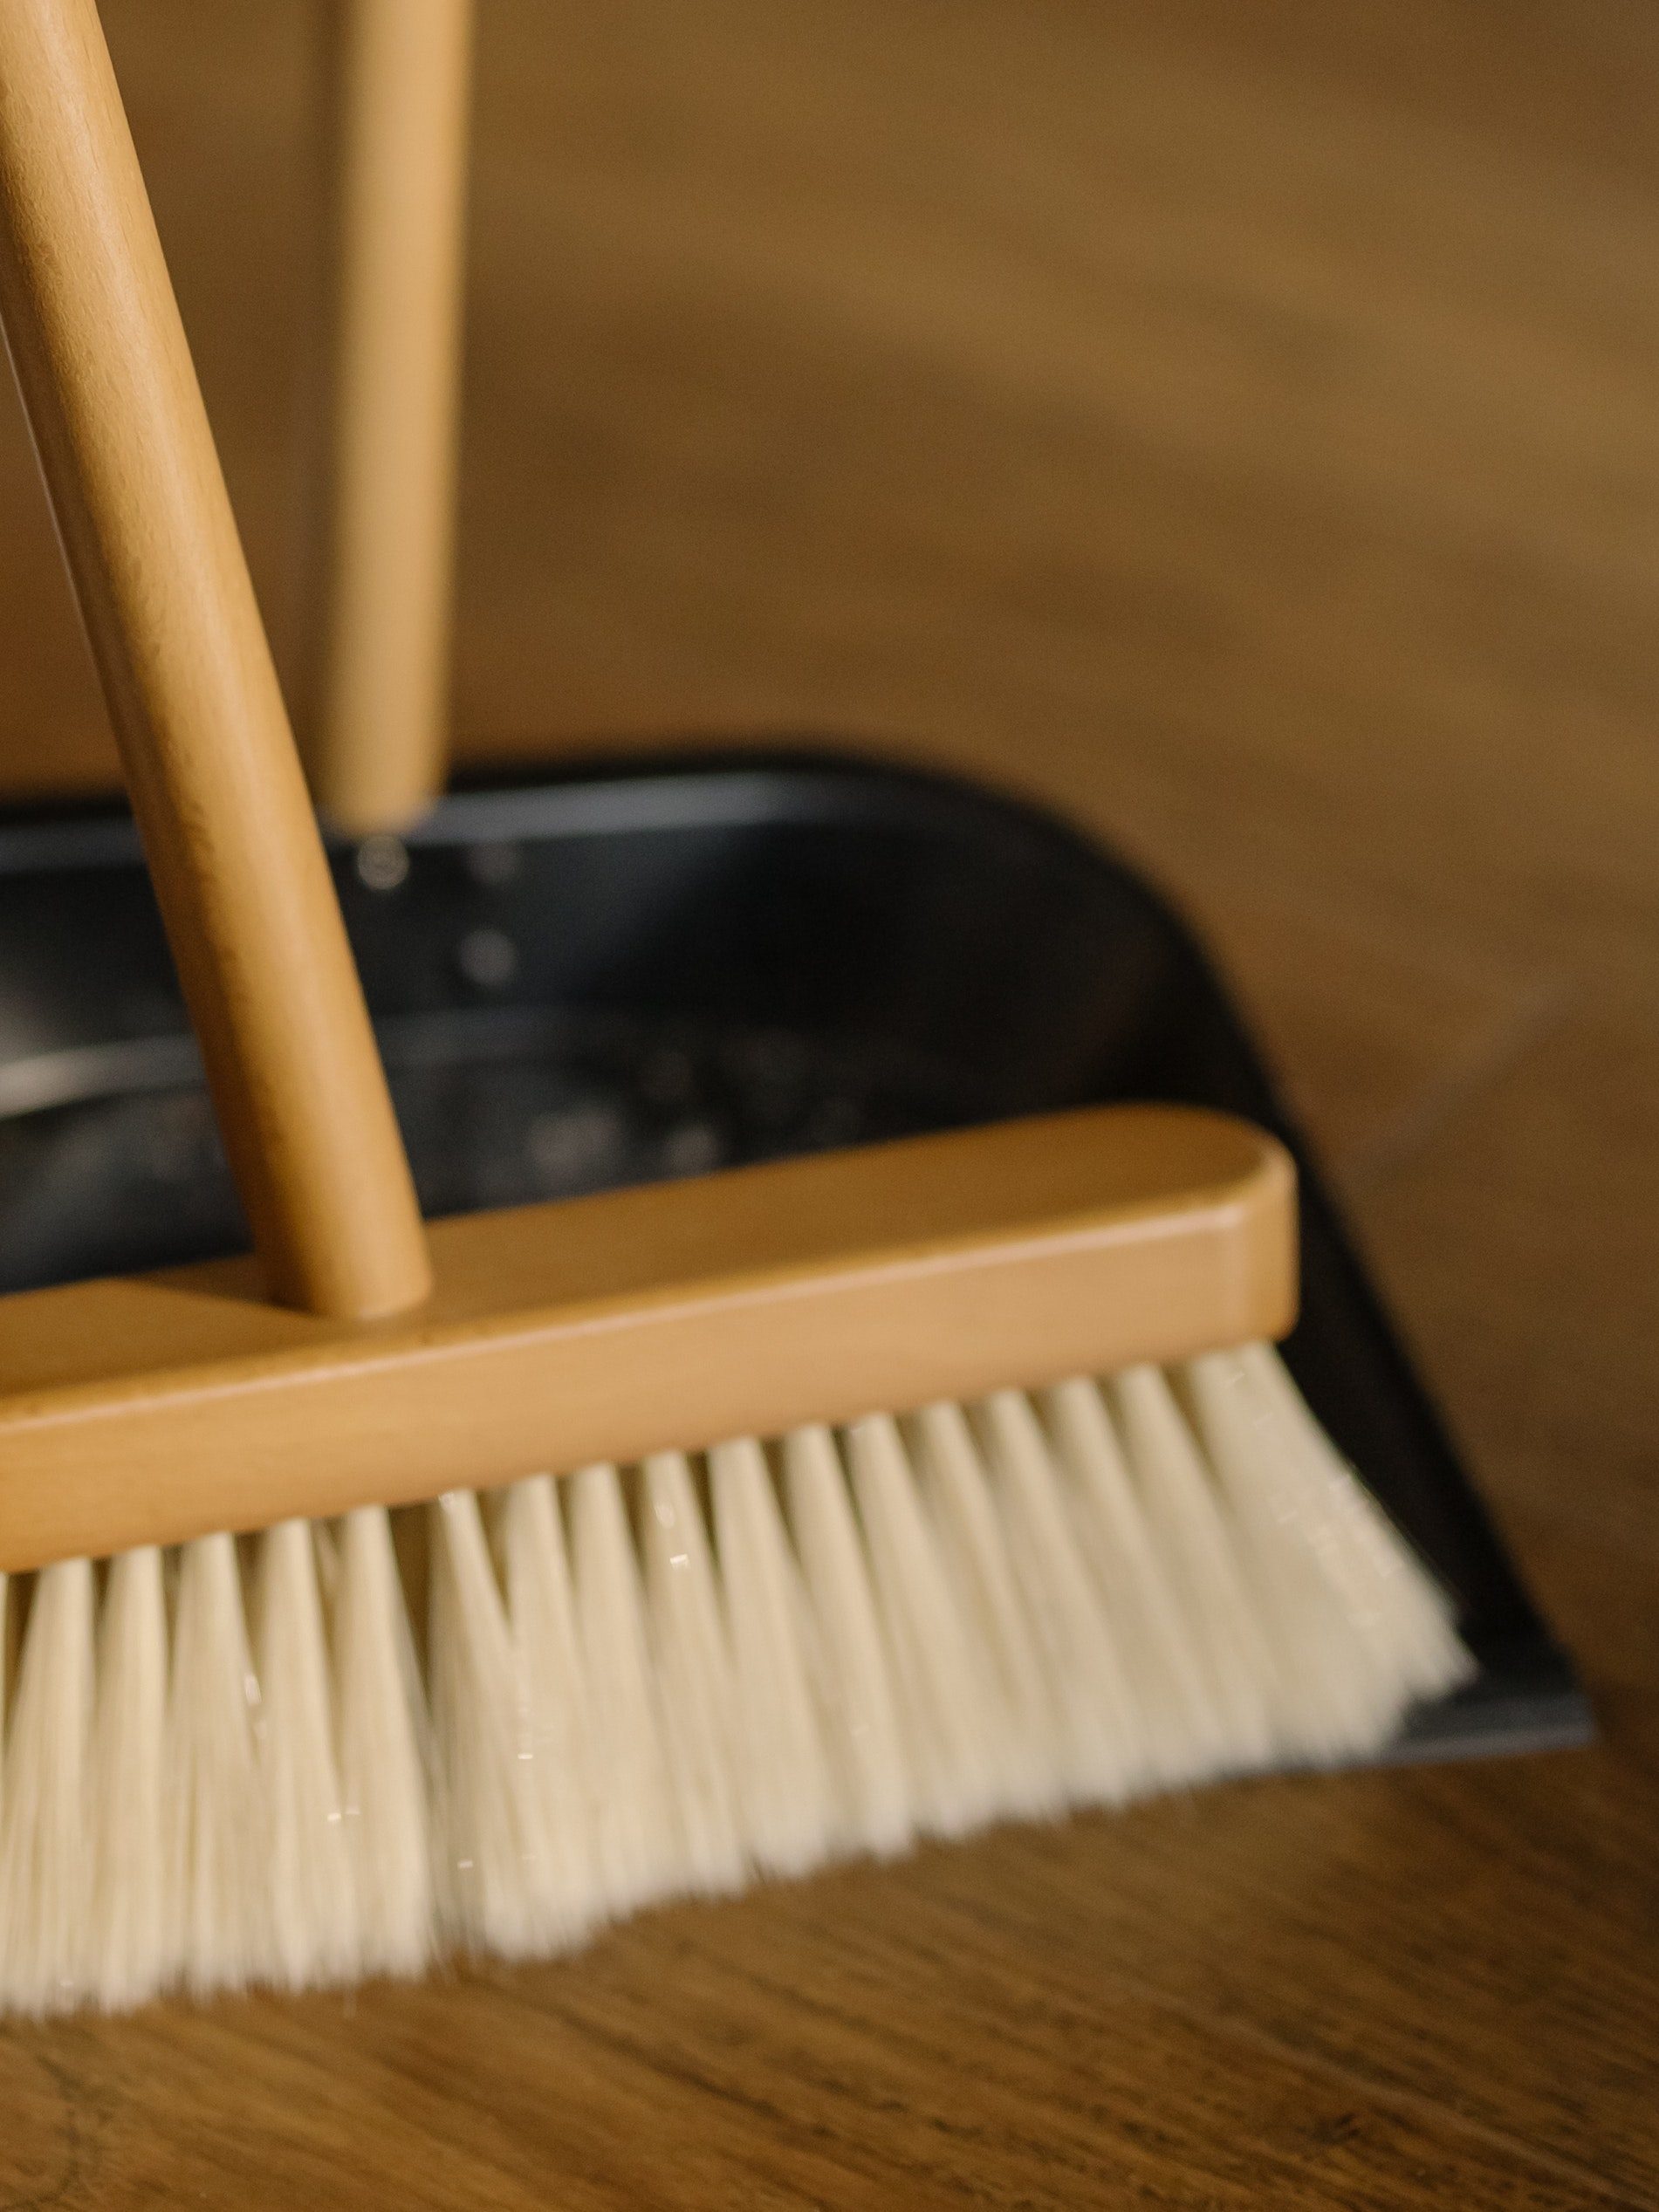 Quels nettoyants utiliser pour enlever la poussière chez soi ?